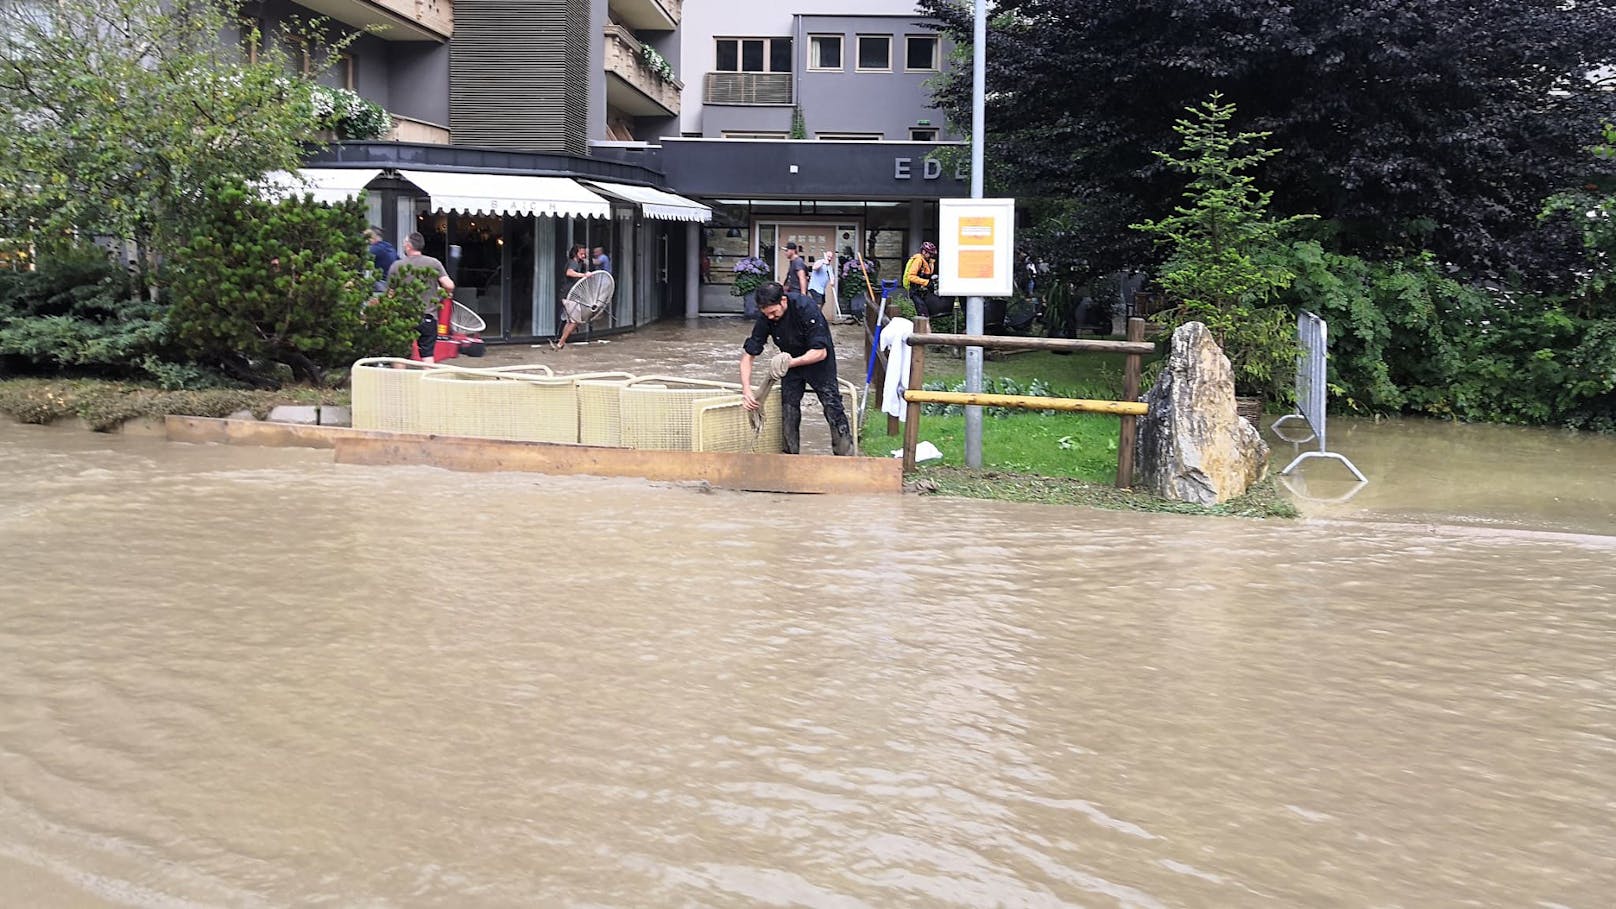 Gerlos-Unwetterlage-Überflutung/Überschwemmung-Fotocredit: ZOOM.TIROL 